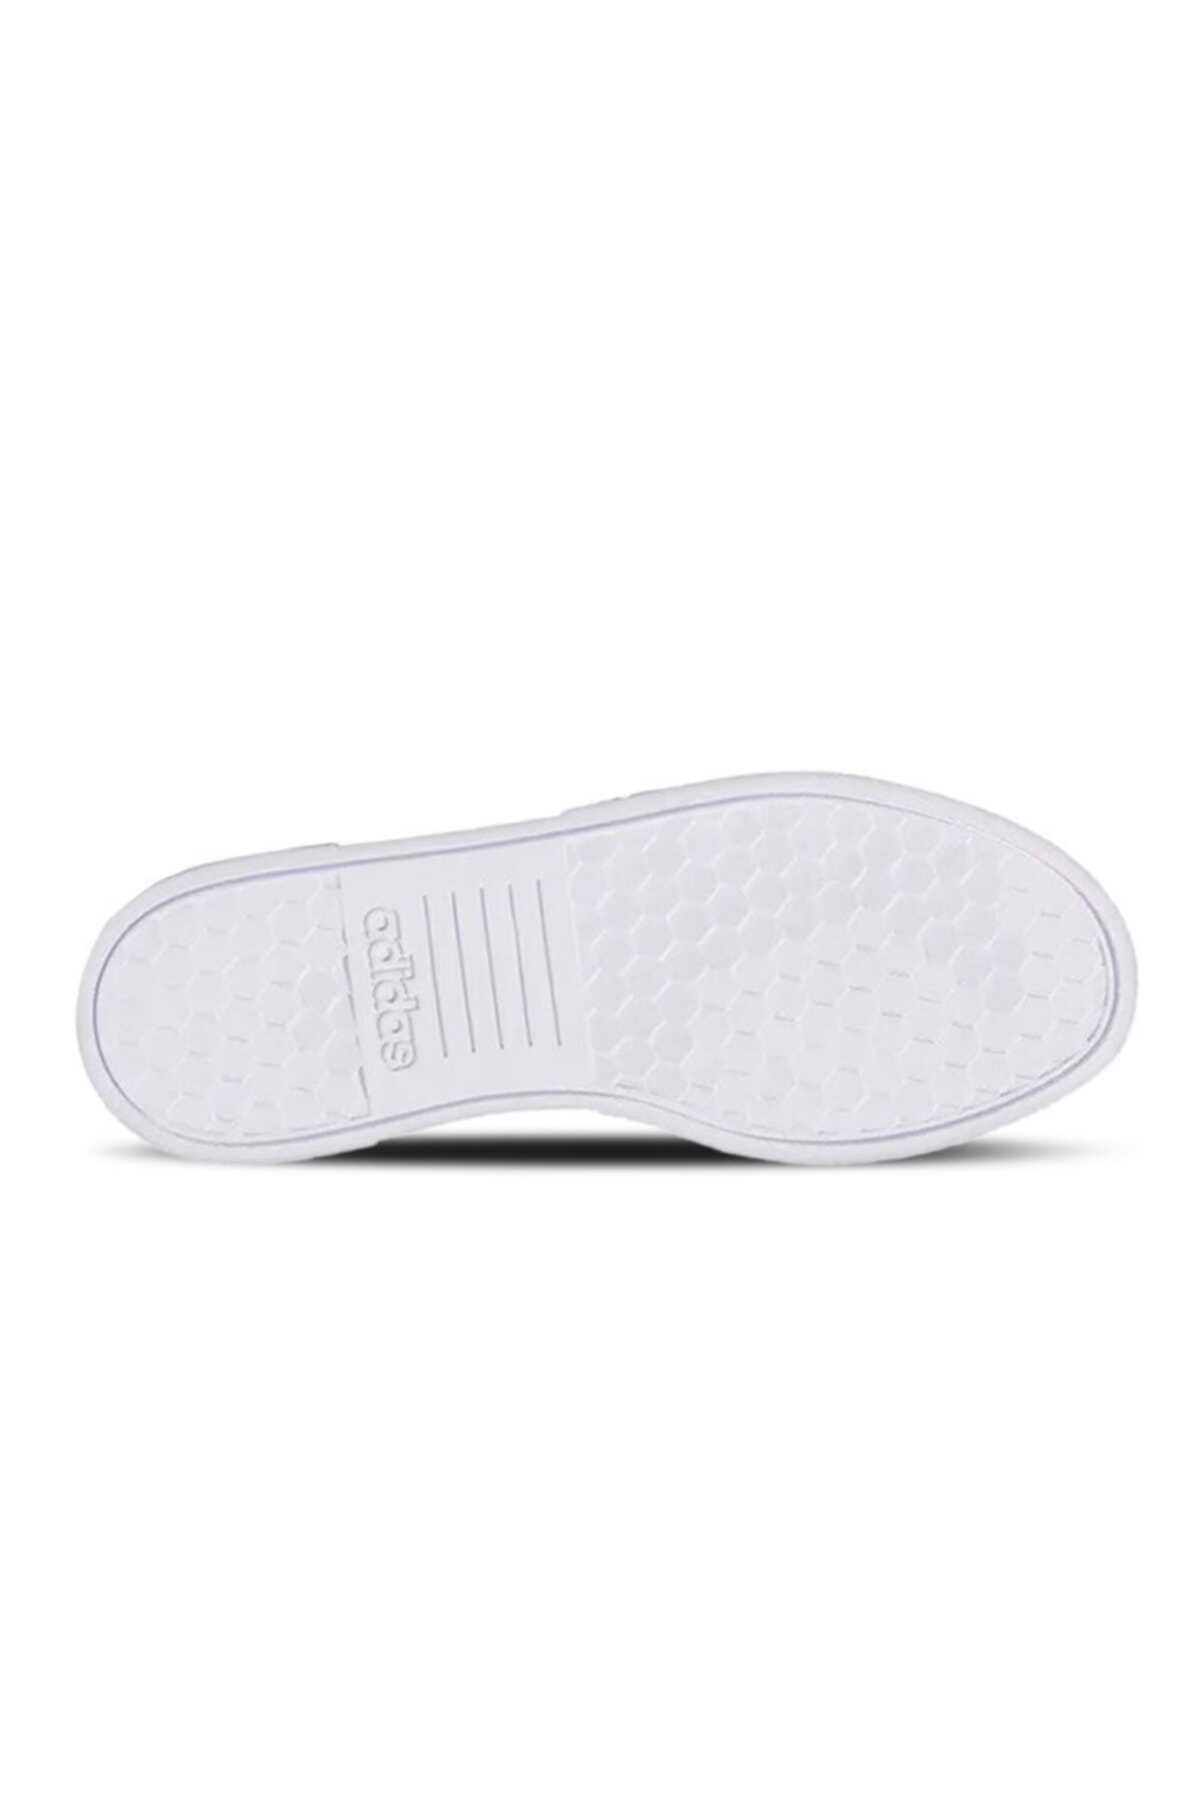 کفش ونس زنانه سفید کد GX5717 برند adidas 